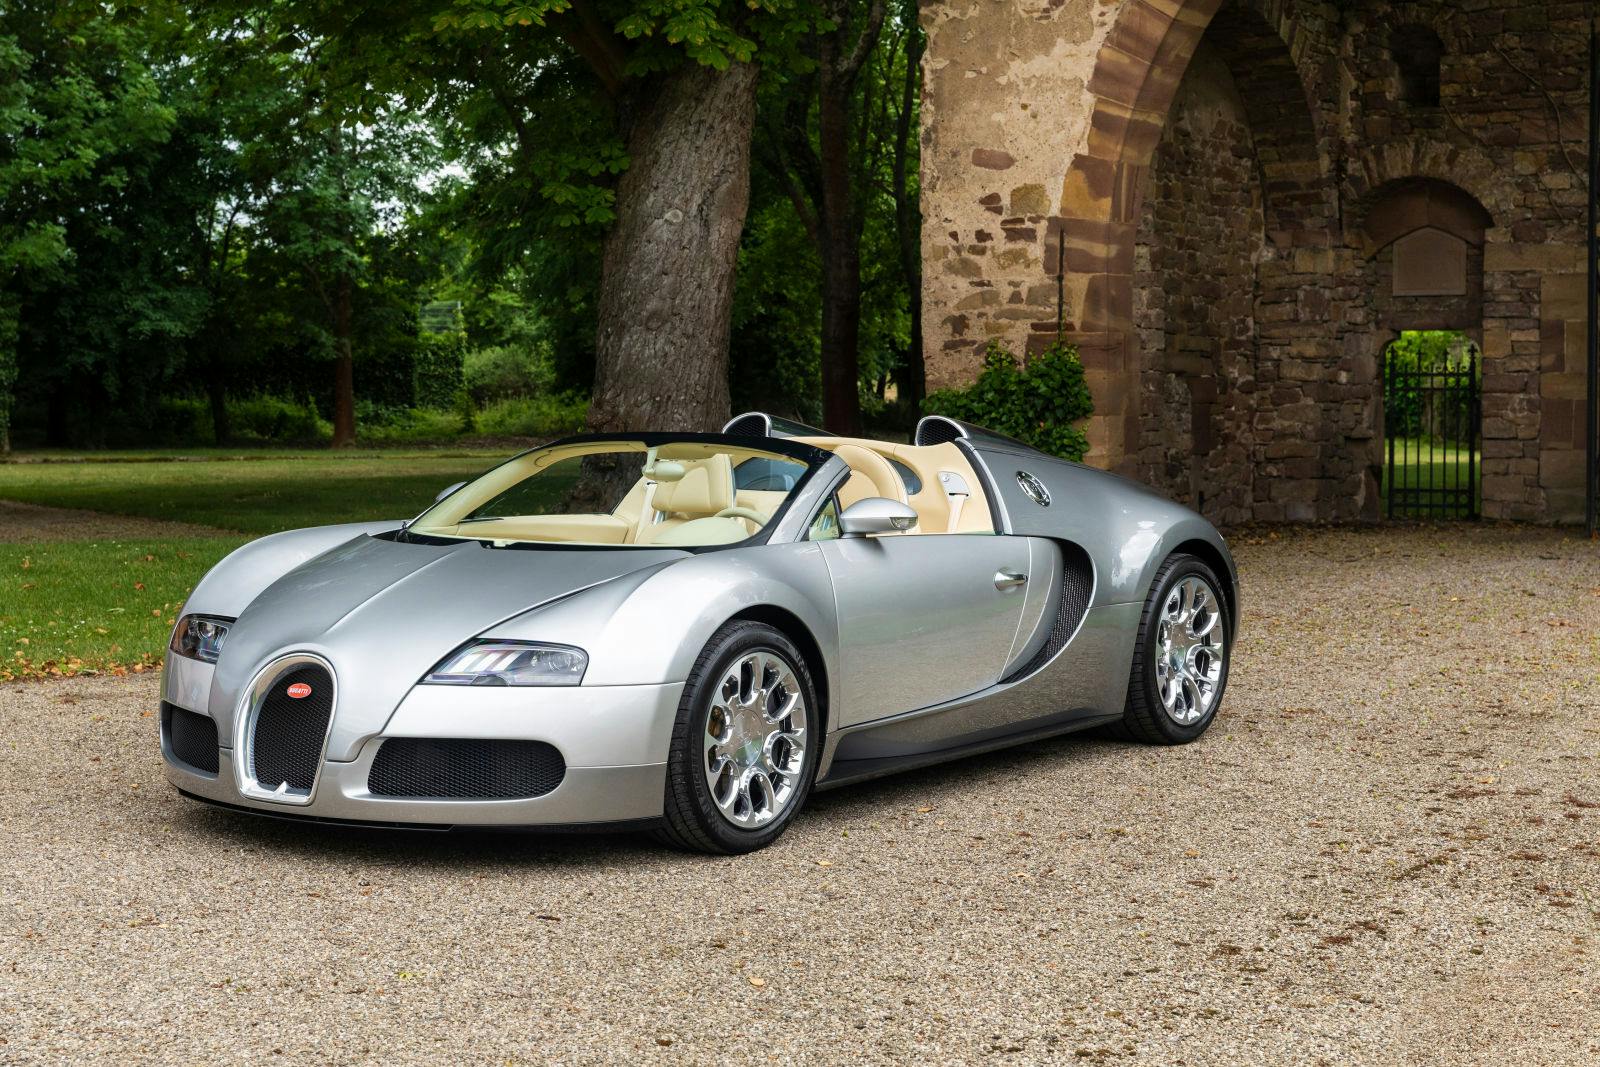 Für den Veyron Grand Sport wollte der Besitzer die Seele des Fahrzeugs bewahren, indem er den Innenraum mit subtilen Details lediglich dezent auffrischte.
